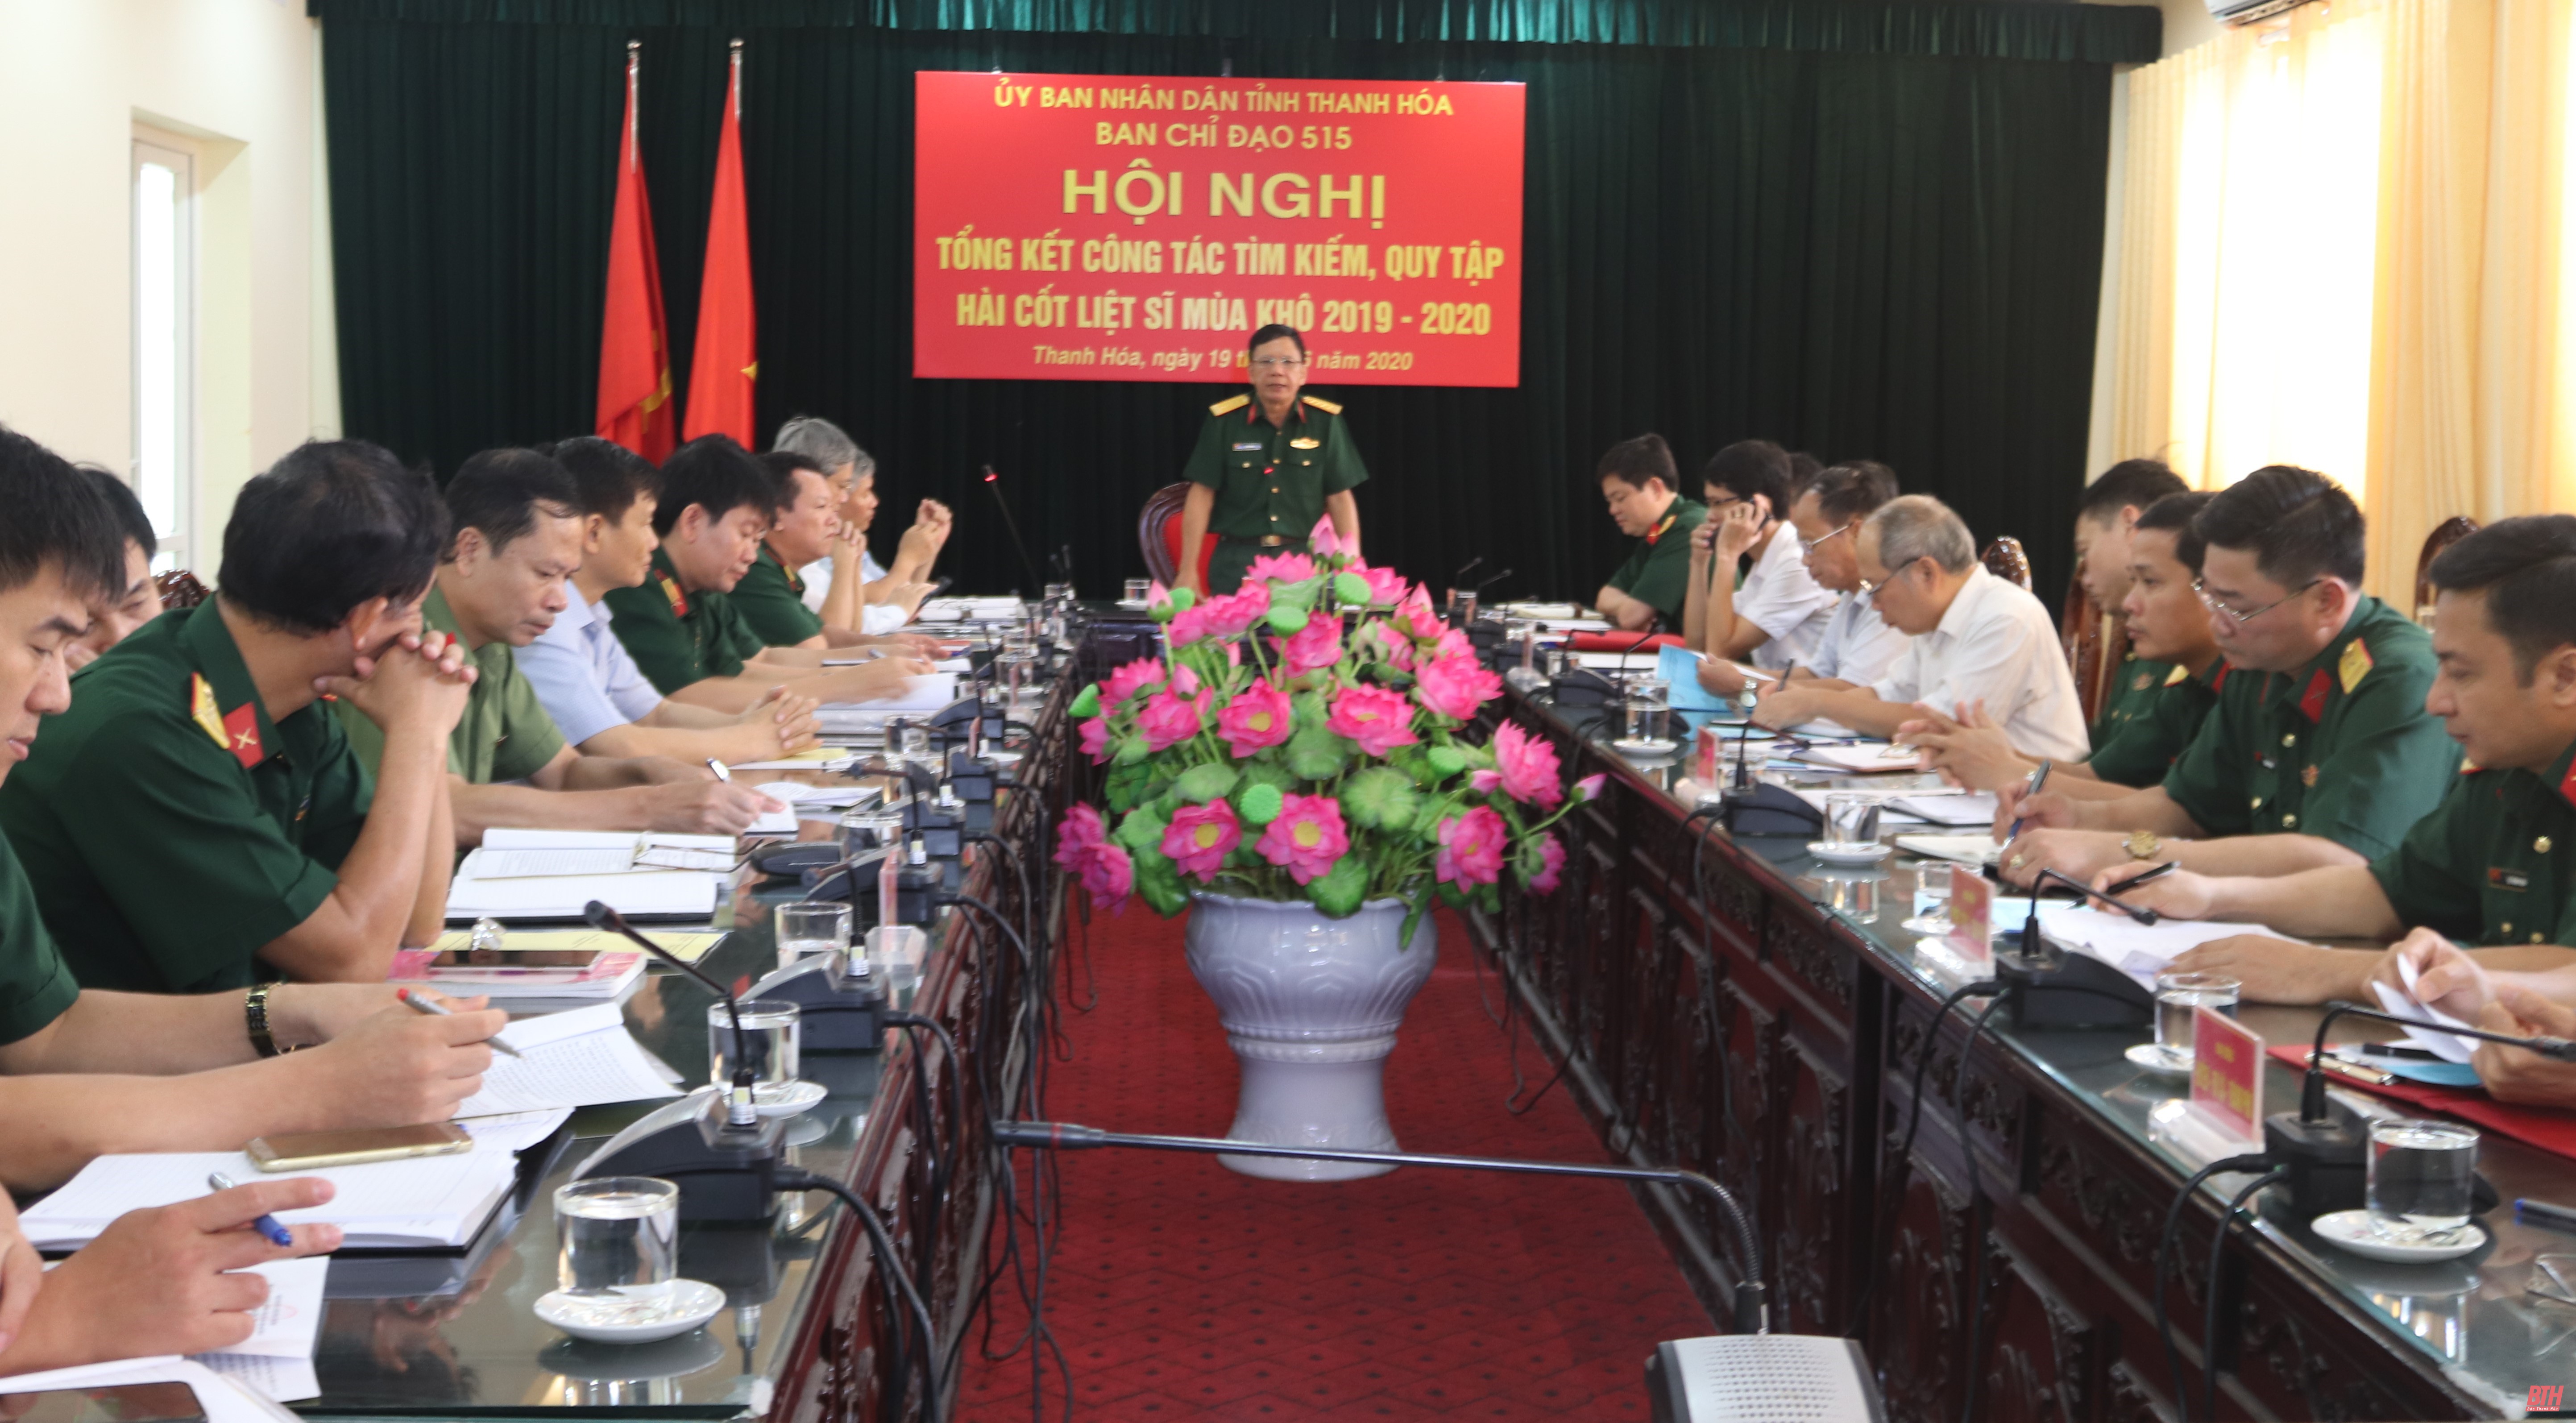 Mùa khô 2019-2020, Ban Chỉ đạo 515 tỉnh Thanh Hóa hoàn thành vượt kế hoạch tìm kiếm, quy tập hài cốt liệt sĩ